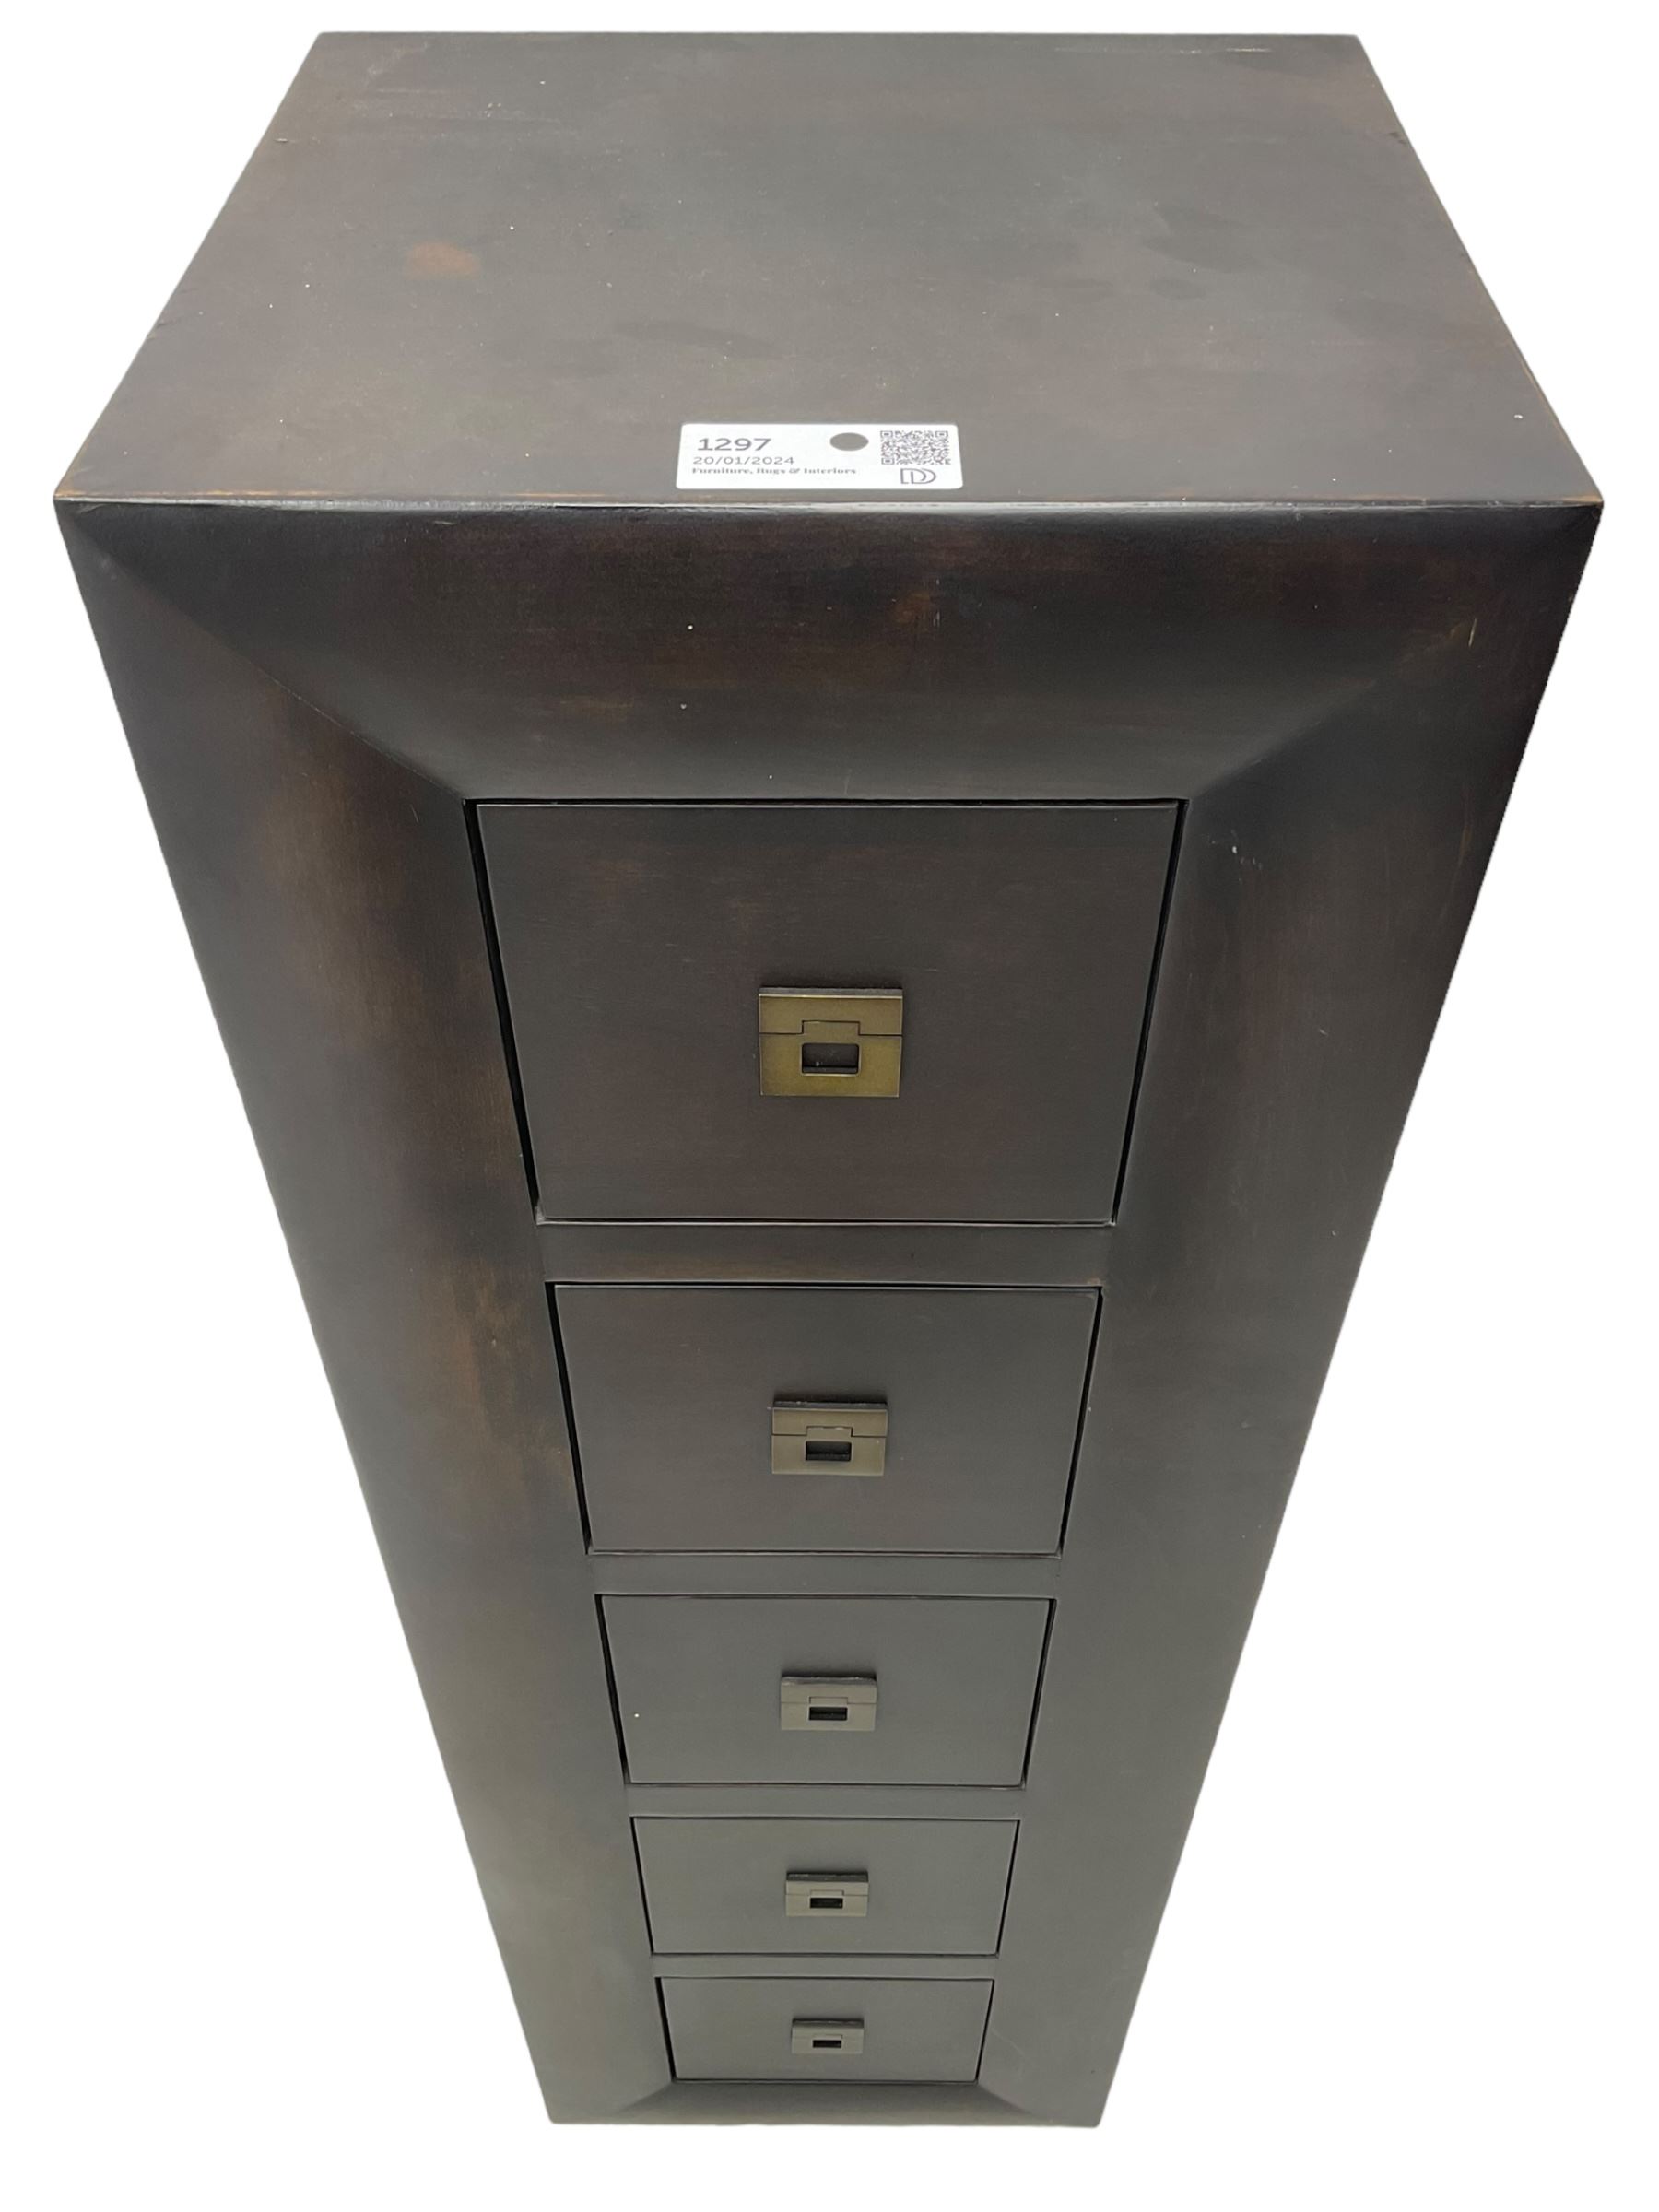 Hardwood five drawer pedestal chest - Image 2 of 4